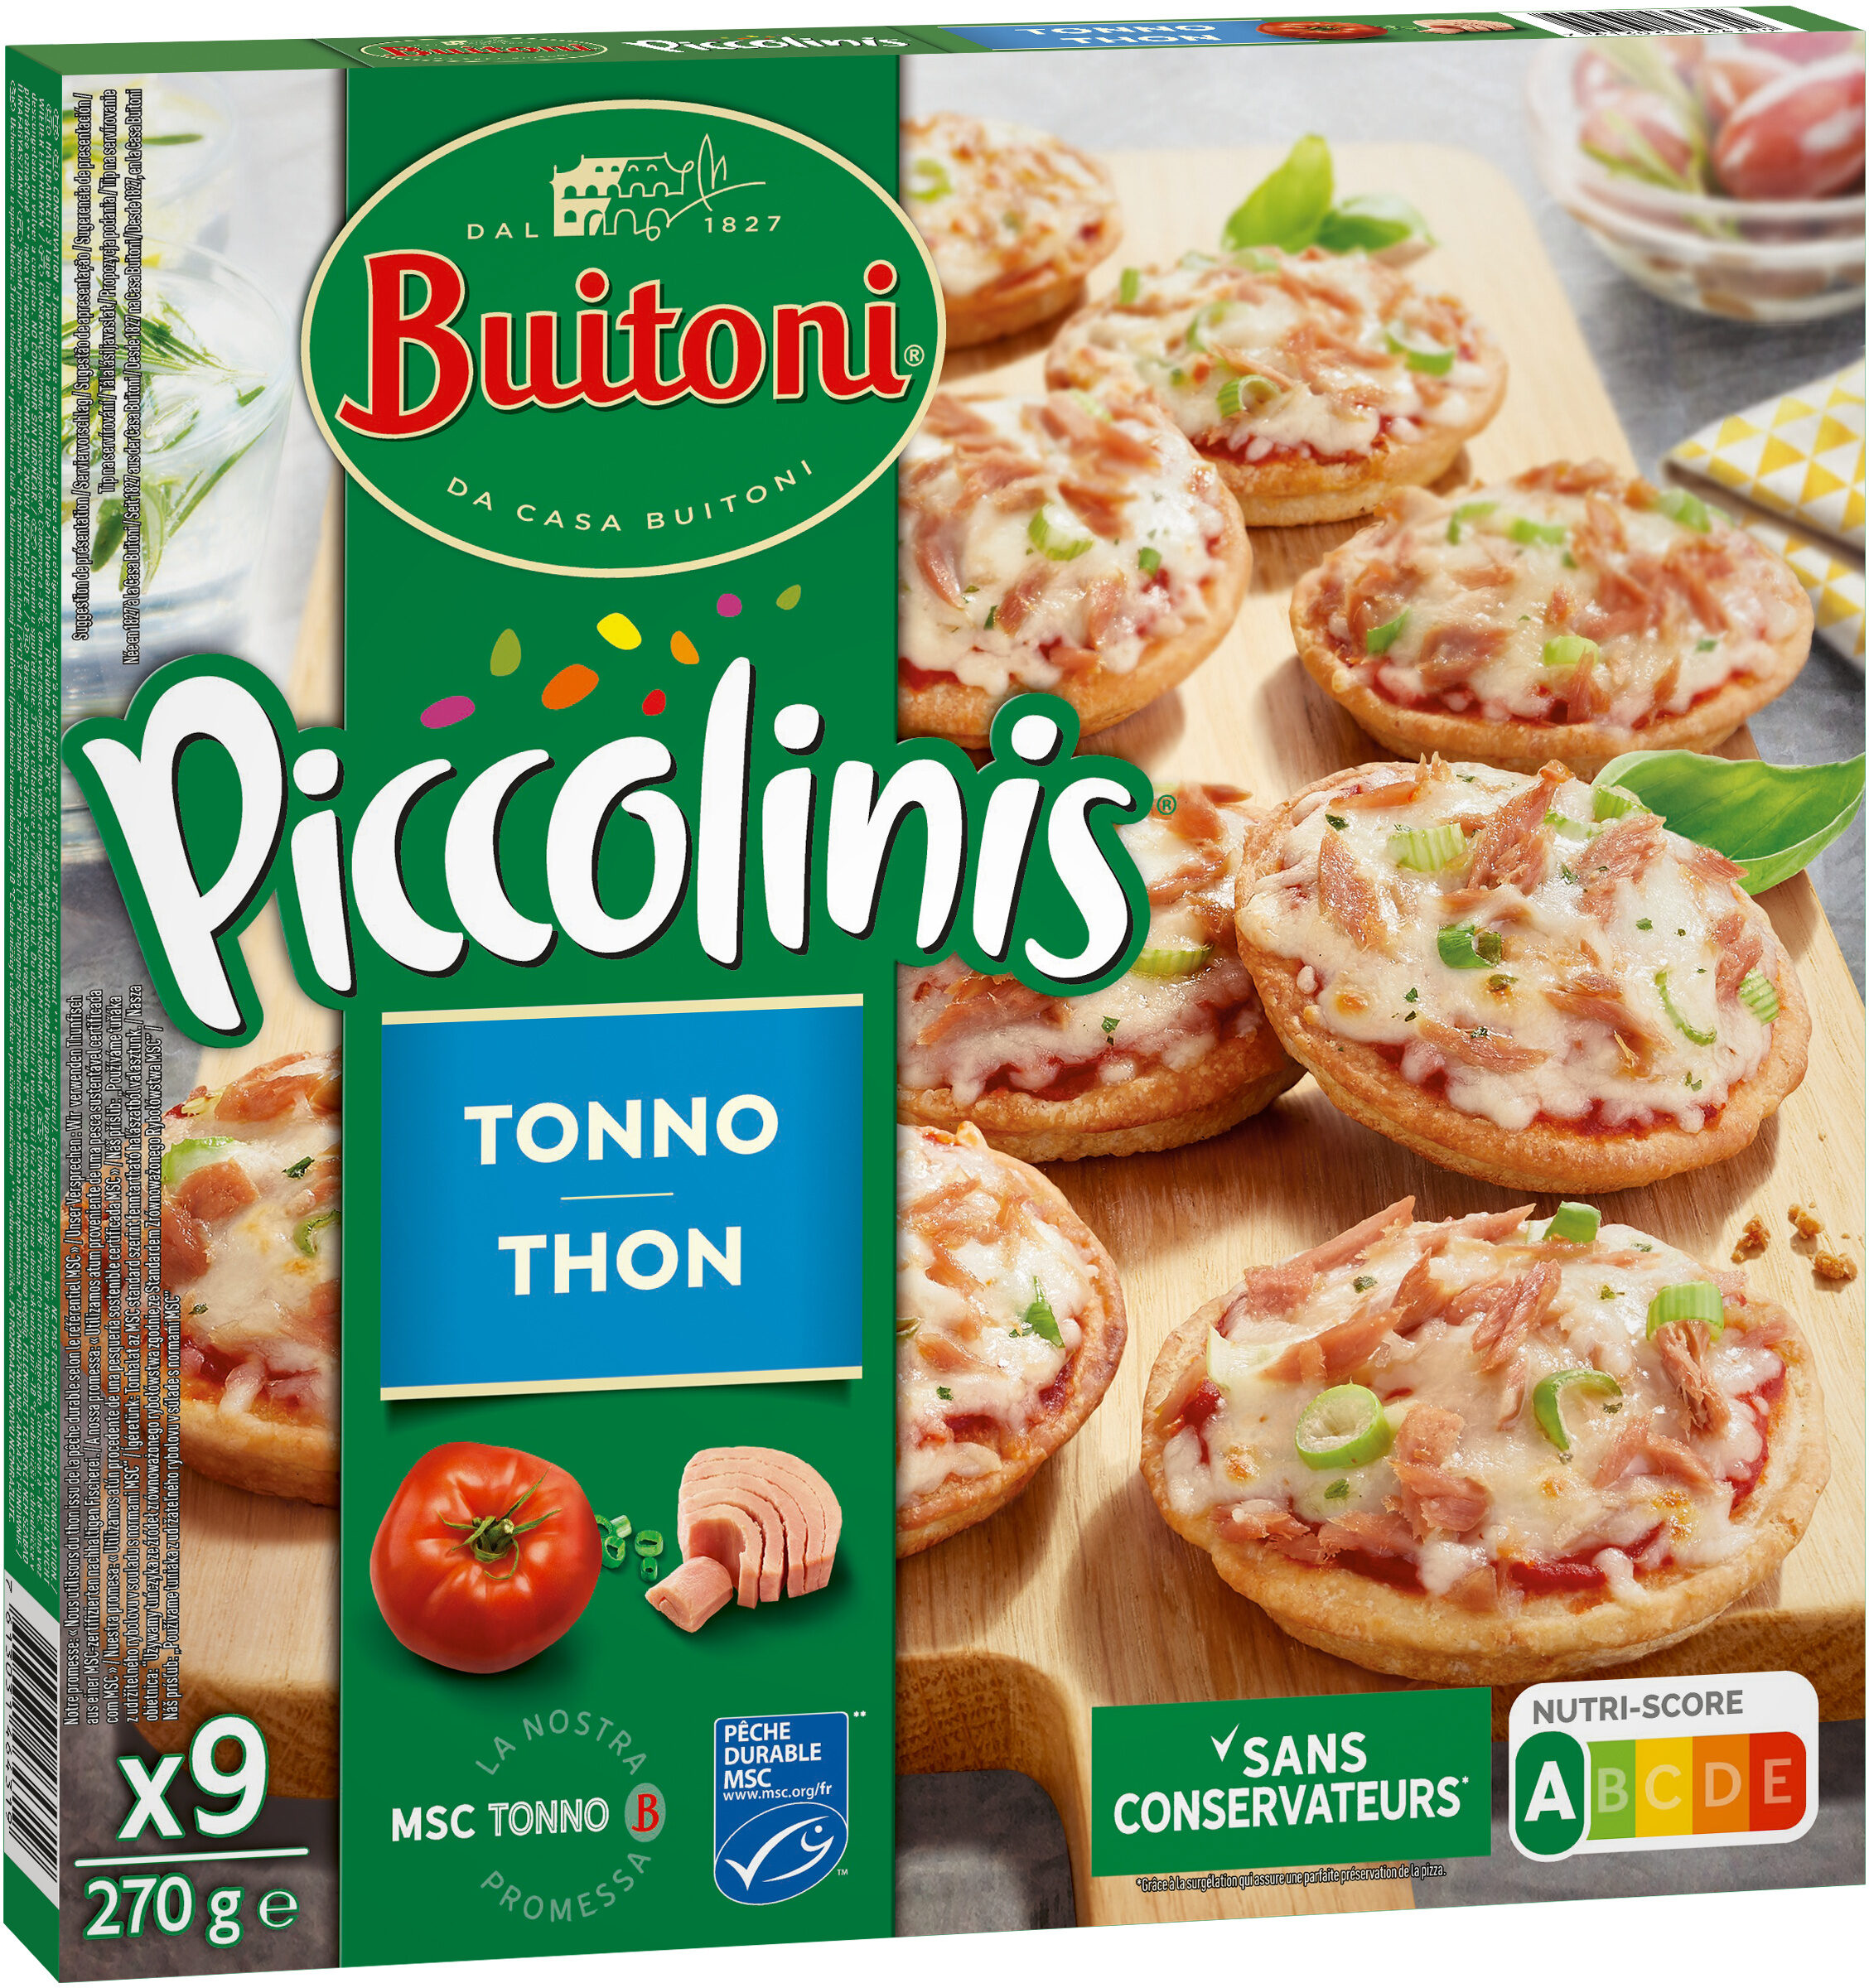 BUITONI PICCOLINIS mini-pizzas surgelées Thon 270g (9 pièces) - Product - fr